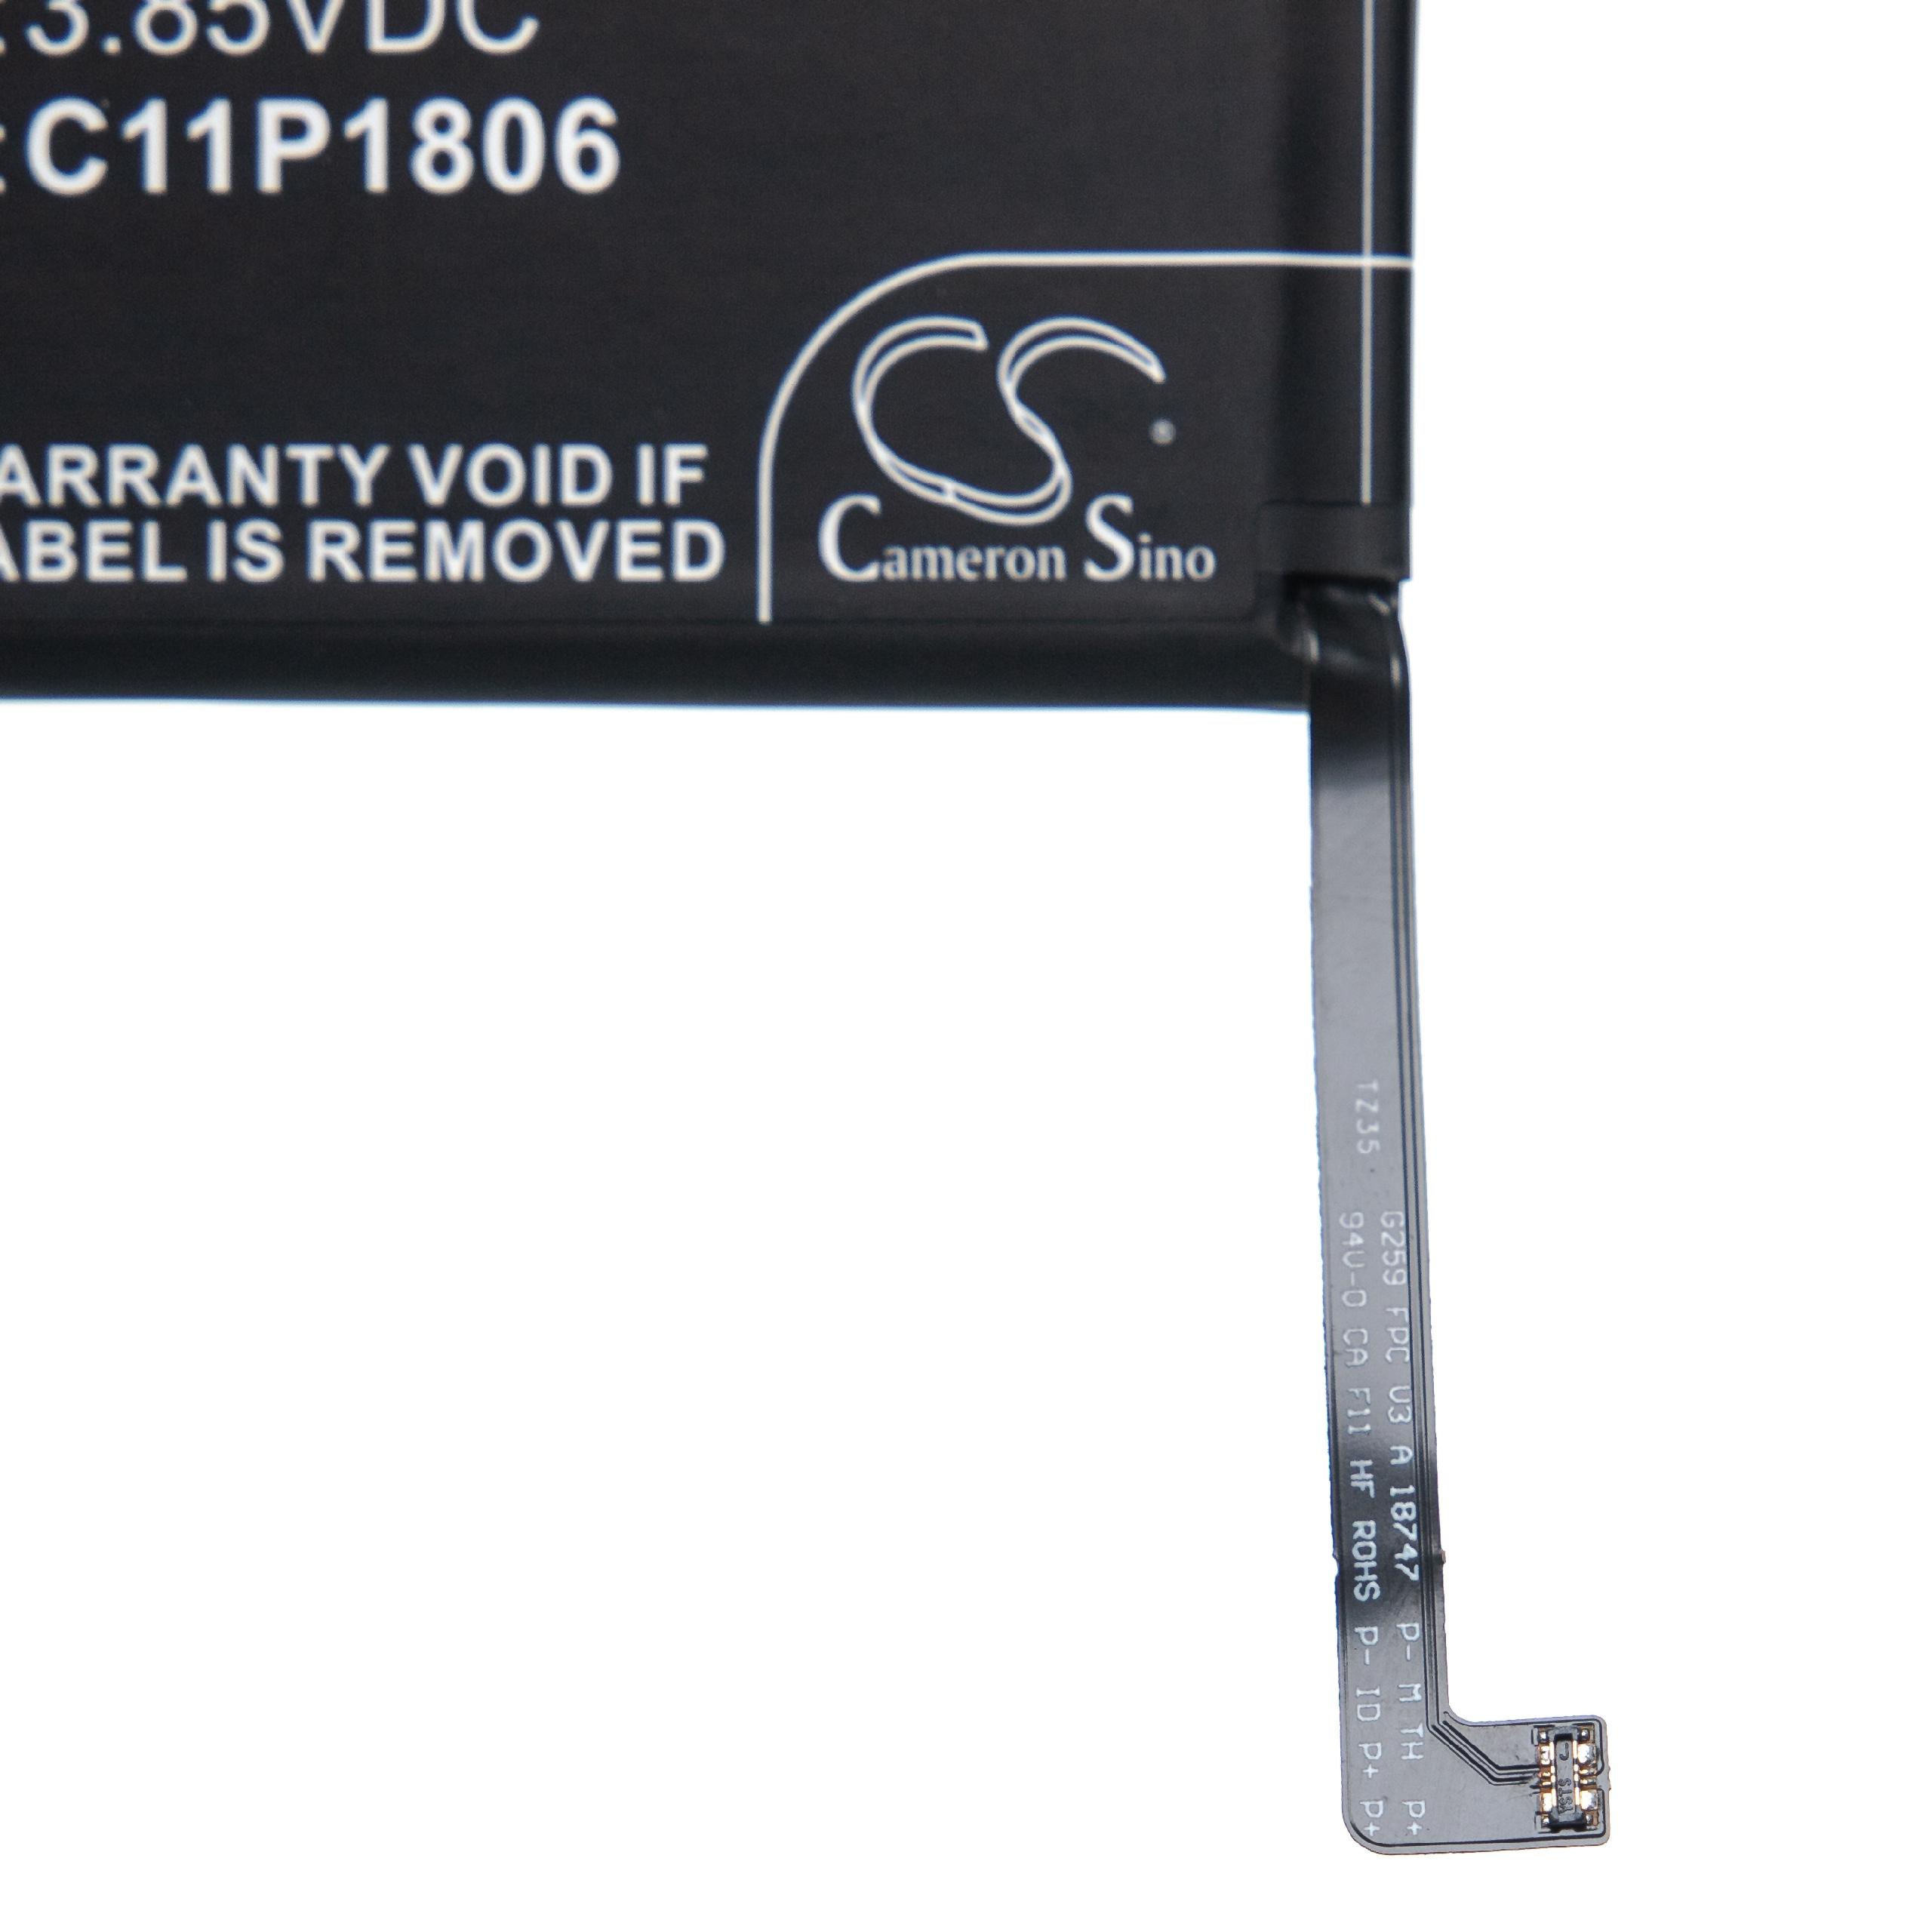 Batteria sostituisce Asus 1ICP5/65/87, C11P1806 per cellulare Asus - 4600mAh 3,85V Li-Poly